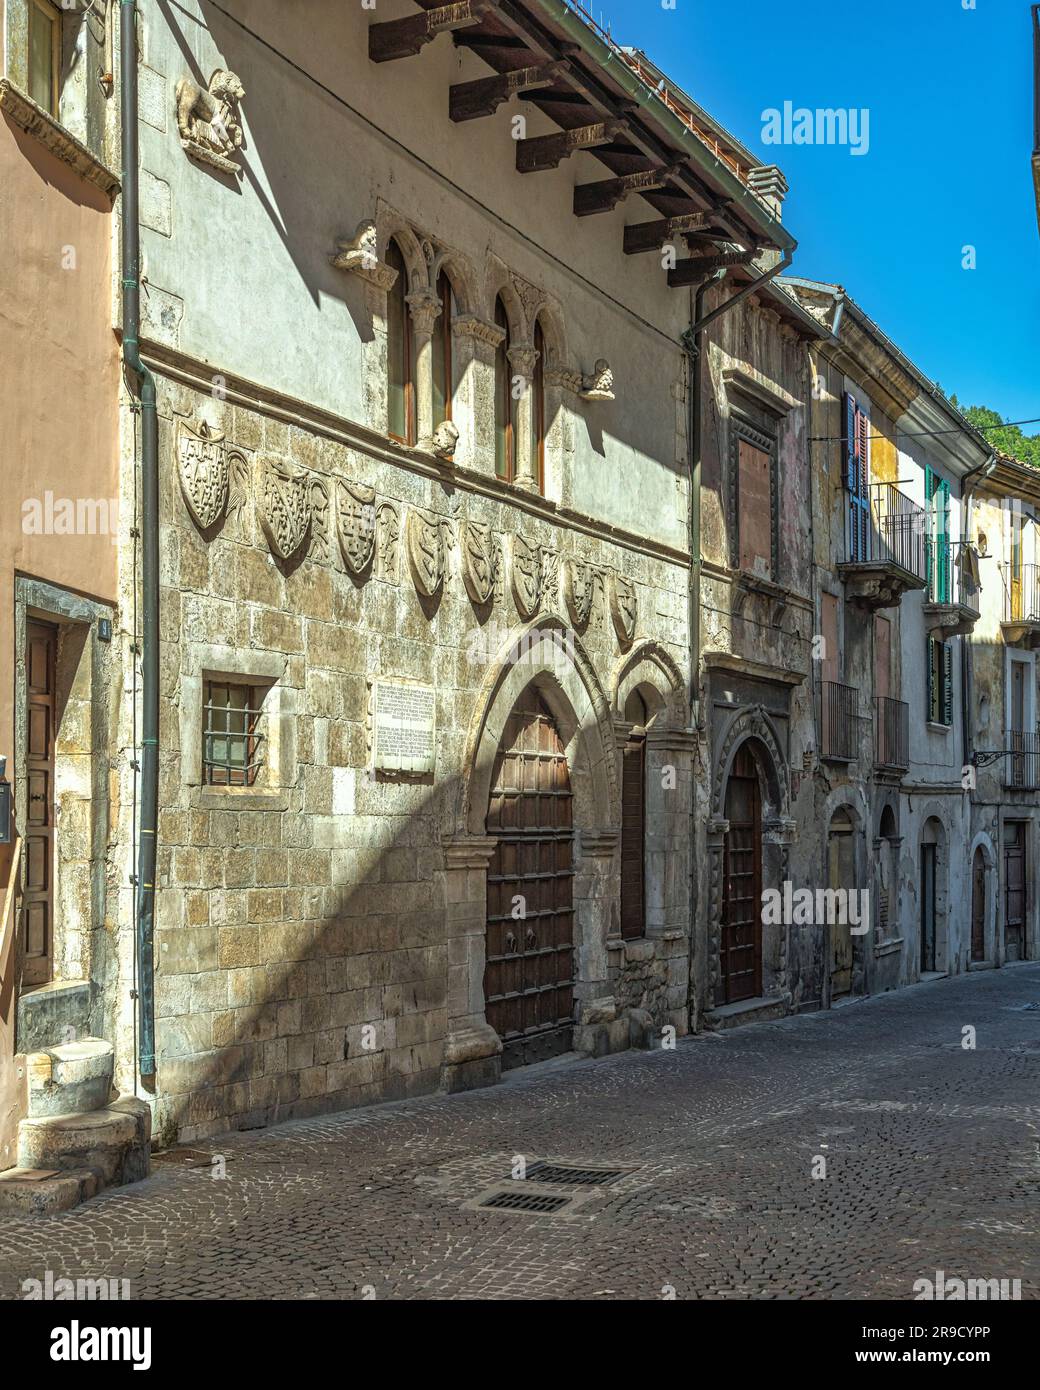 Die Fassade der Herzogskneipe von Popoli mit den heraldischen Wappen der Familien, die mit dem Cantelmo und D'Angiò verbunden sind. Popoli, Abruzzen Stockfoto